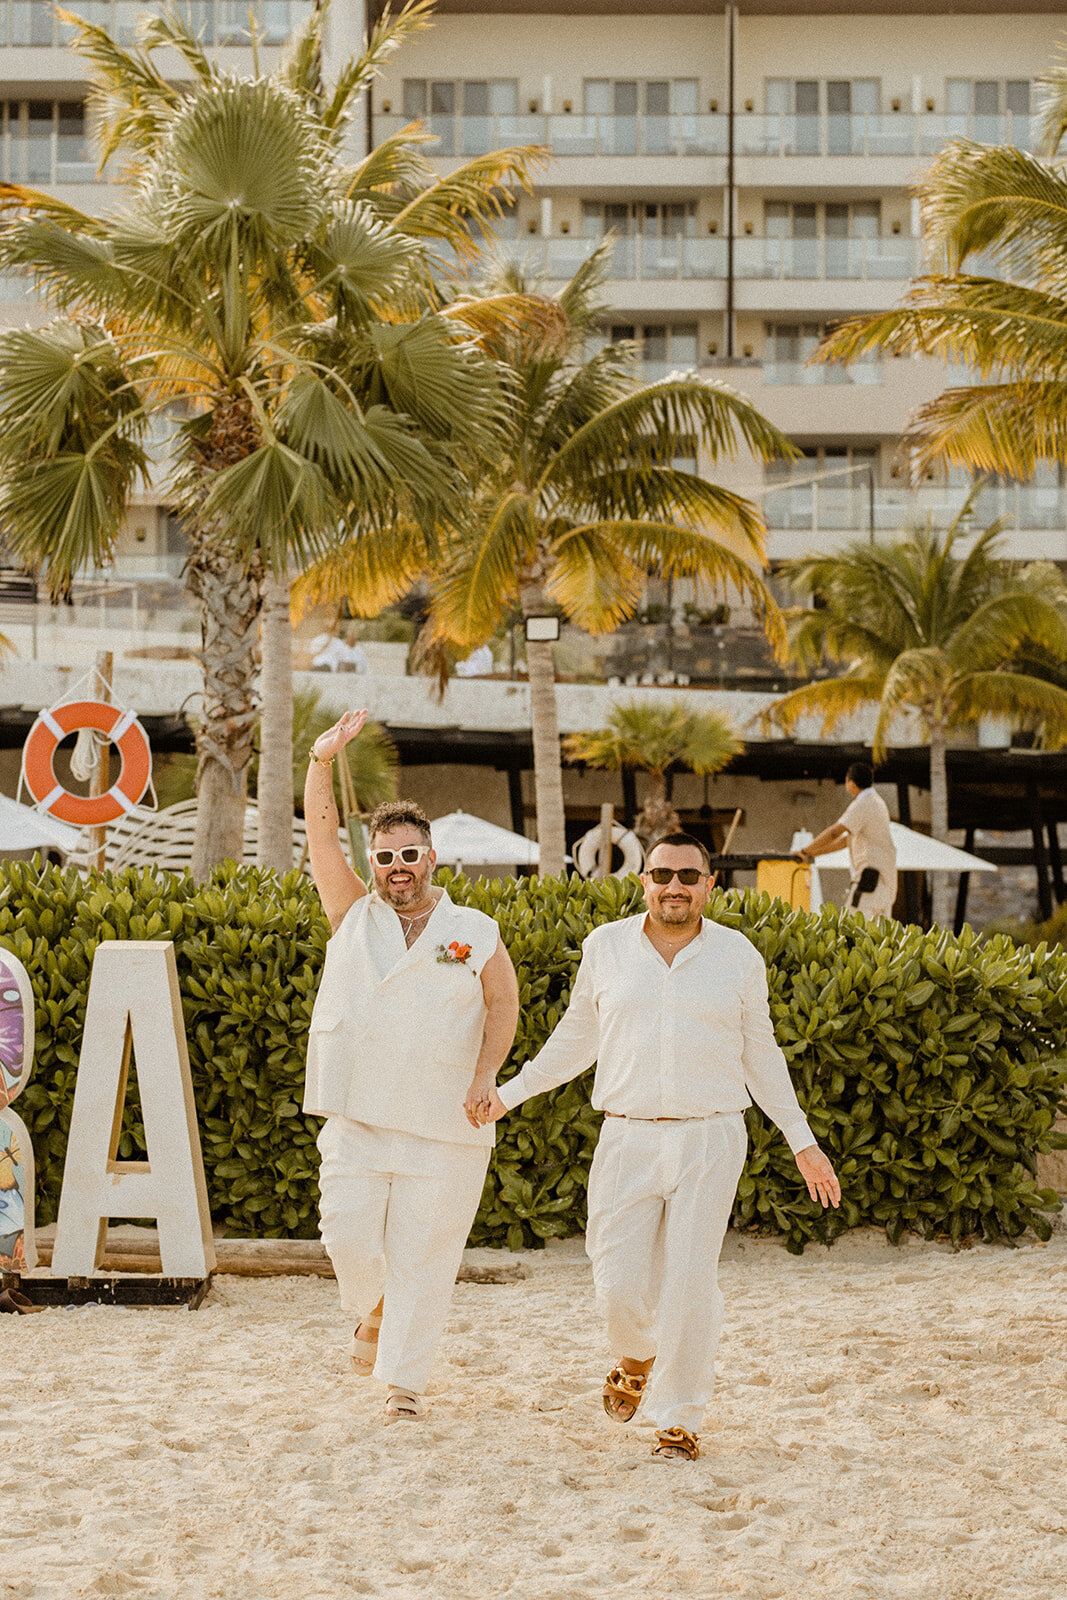 d-mexico-cancun-dreams-natura-resort-queer-lgbtq-wedding-details-ceremony-i-dos-01